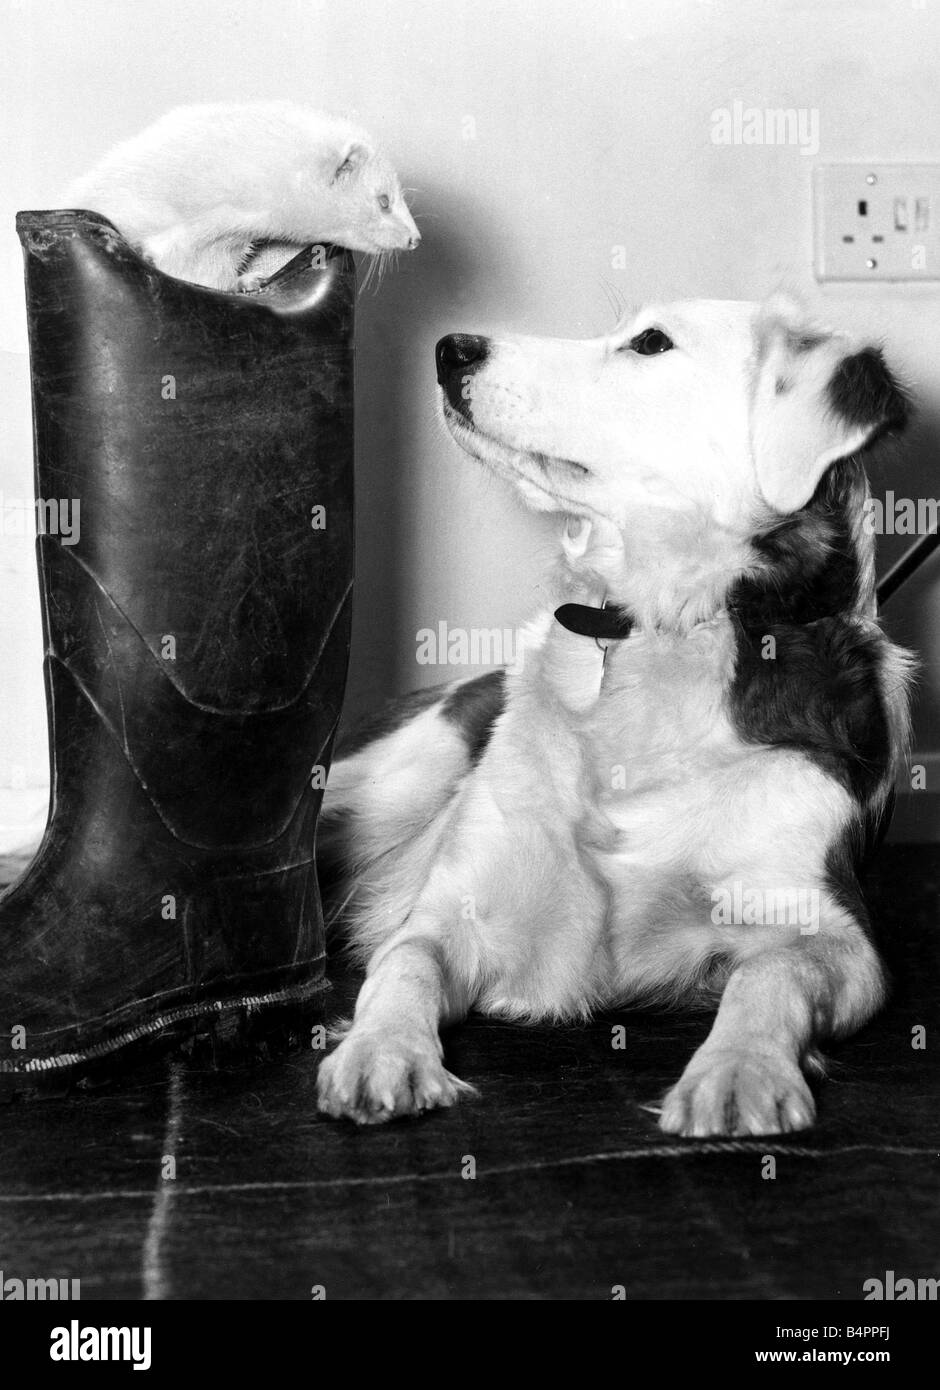 Mildred la sympathique ferret fait face à son amie Cindy au domicile de la famille Gilbert au Criydon Monsieur Gilbert a perdu l'usage de sa botte depuis Mildred mis en place il y a d'entretien ménager léger Mai 1977 Banque D'Images